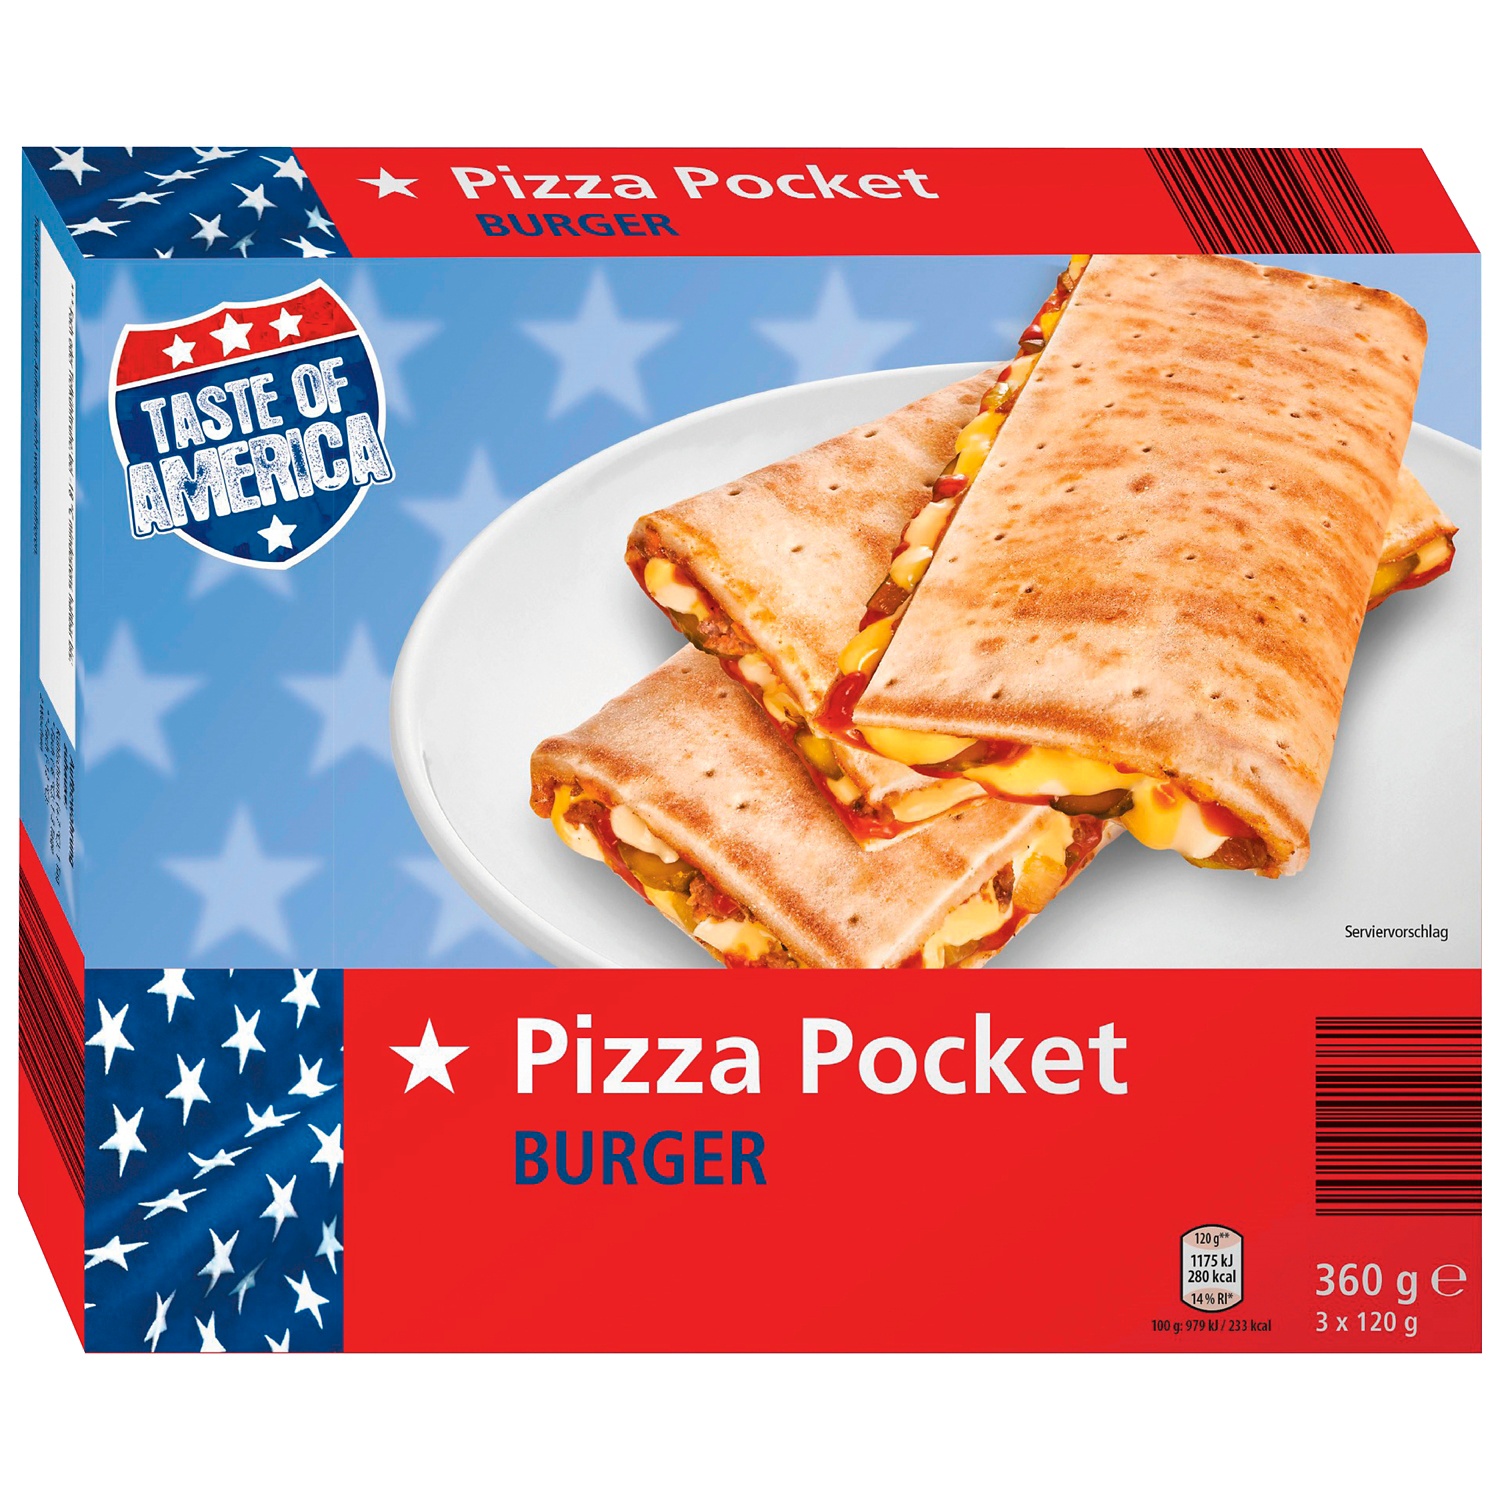 TASTE OF AMERICA Pizza Pockets, Burger